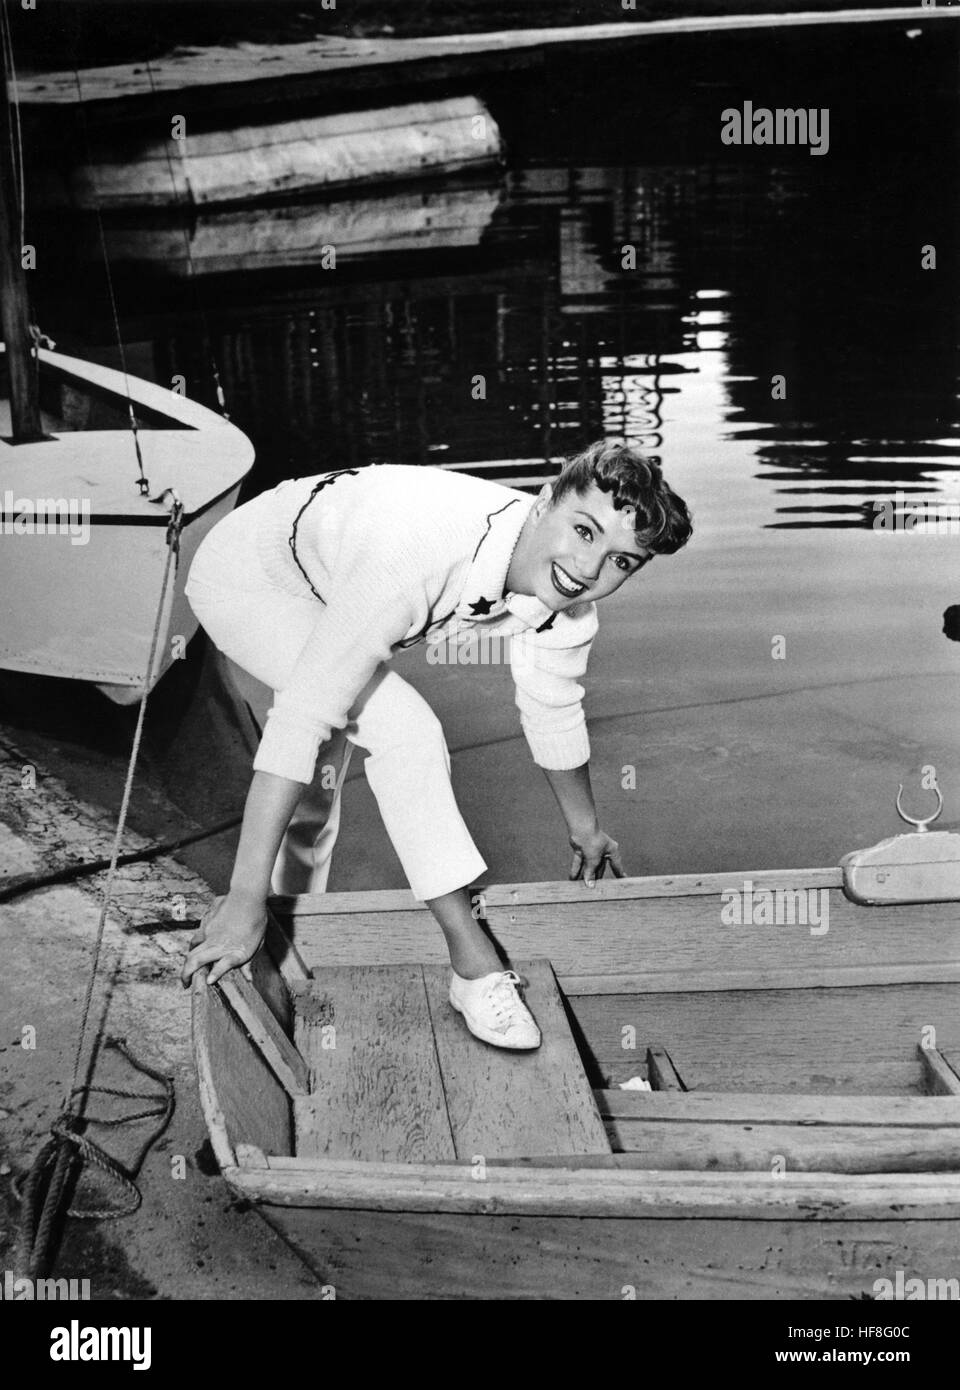 5669993 (9002126) Debbie REYNOLDS, amerikanische Schauspielerin und Sängerin, posiert neben einem Boot am See. Ort und Datum unbekannt, ca. 1955. | Verwendung weltweit/picture alliance Stock Photo